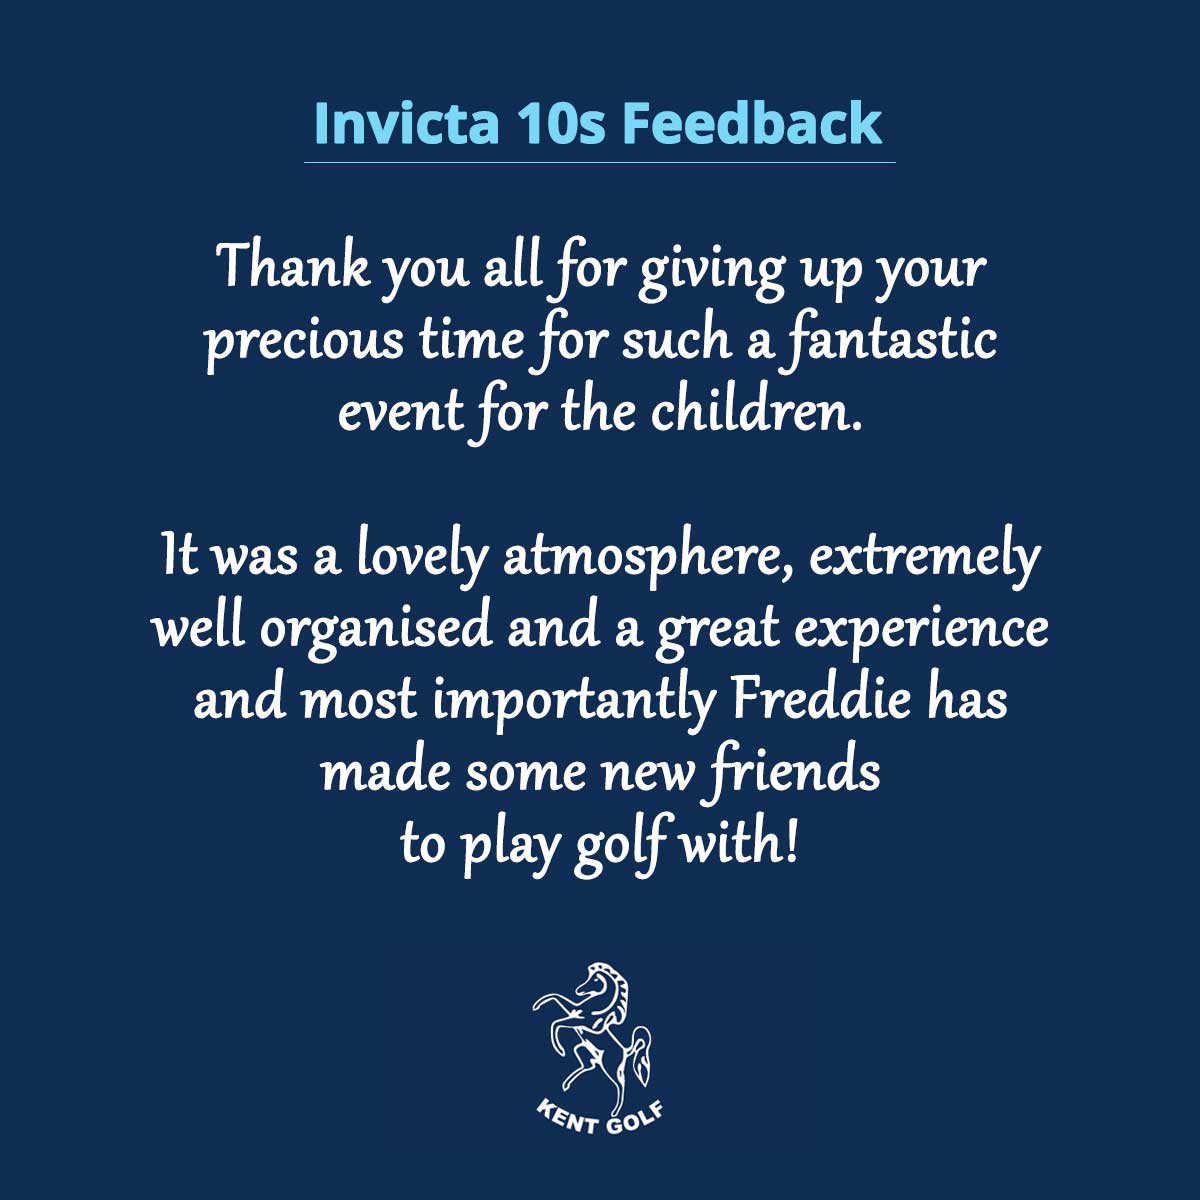 Invicta 10s feedback